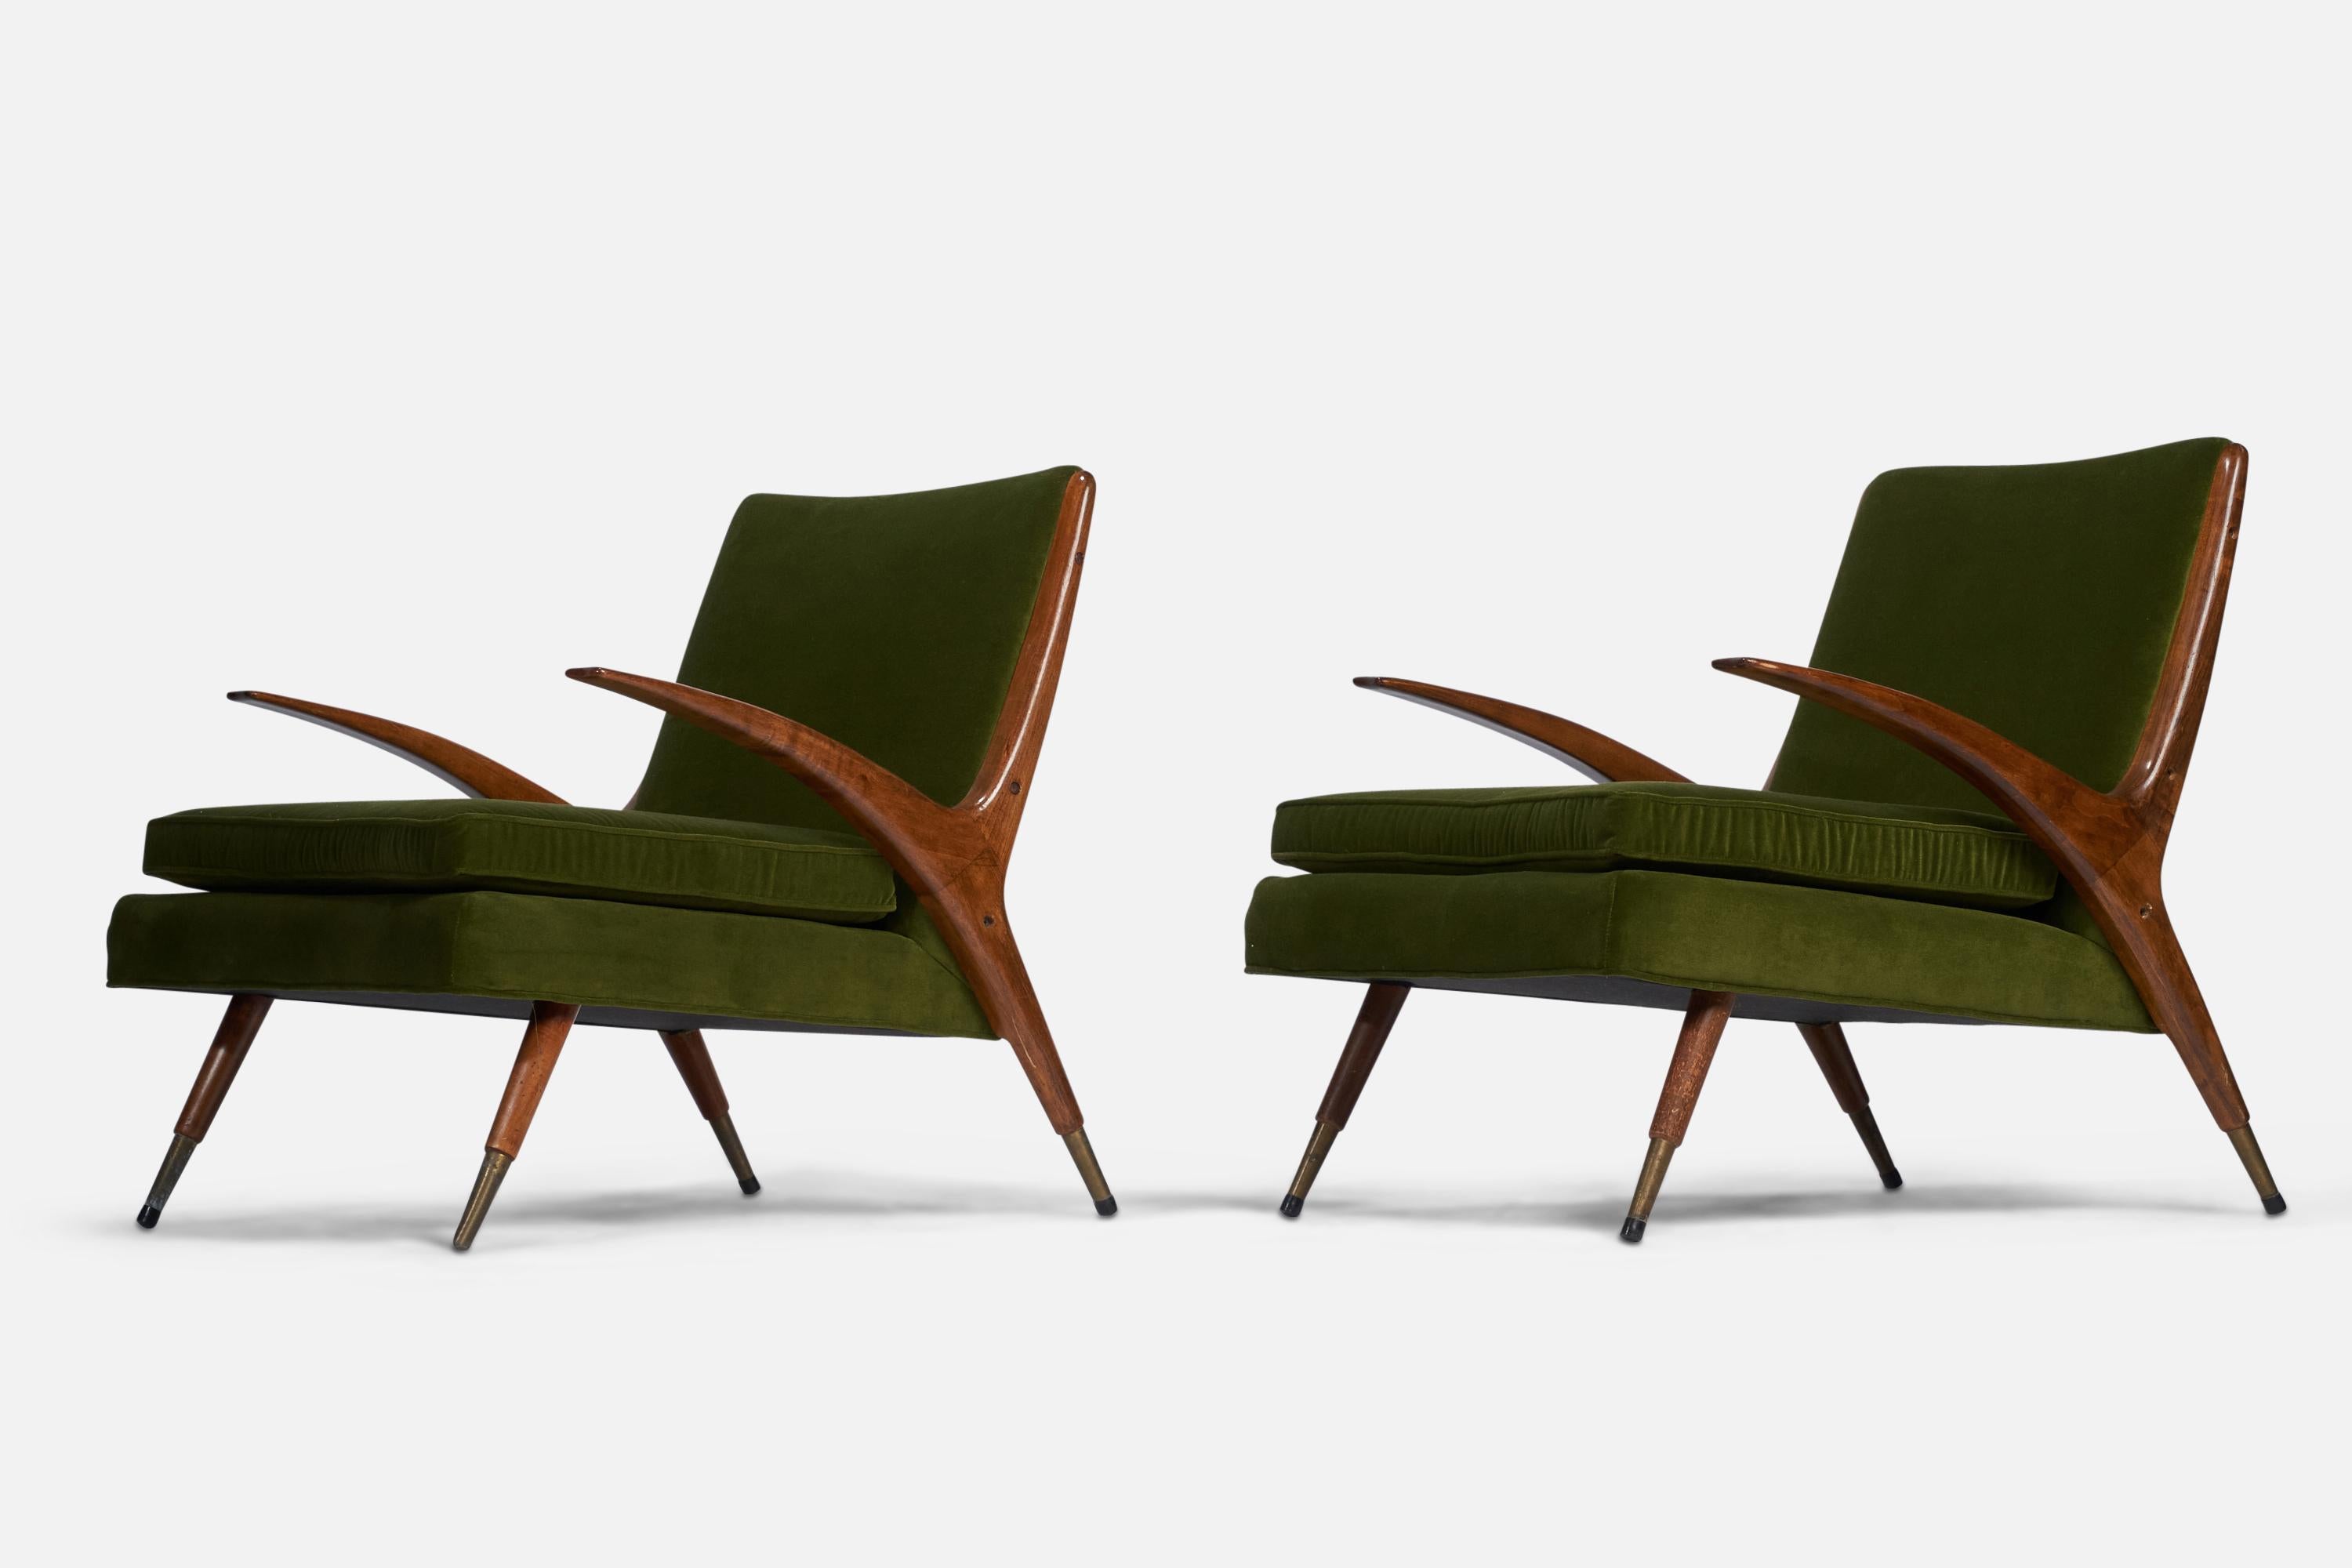 Paire de chaises longues en noyer, laiton et velours vert, conçues et produites par Karpen of California, États-Unis, années 1950.
Hauteur du siège : 16.5